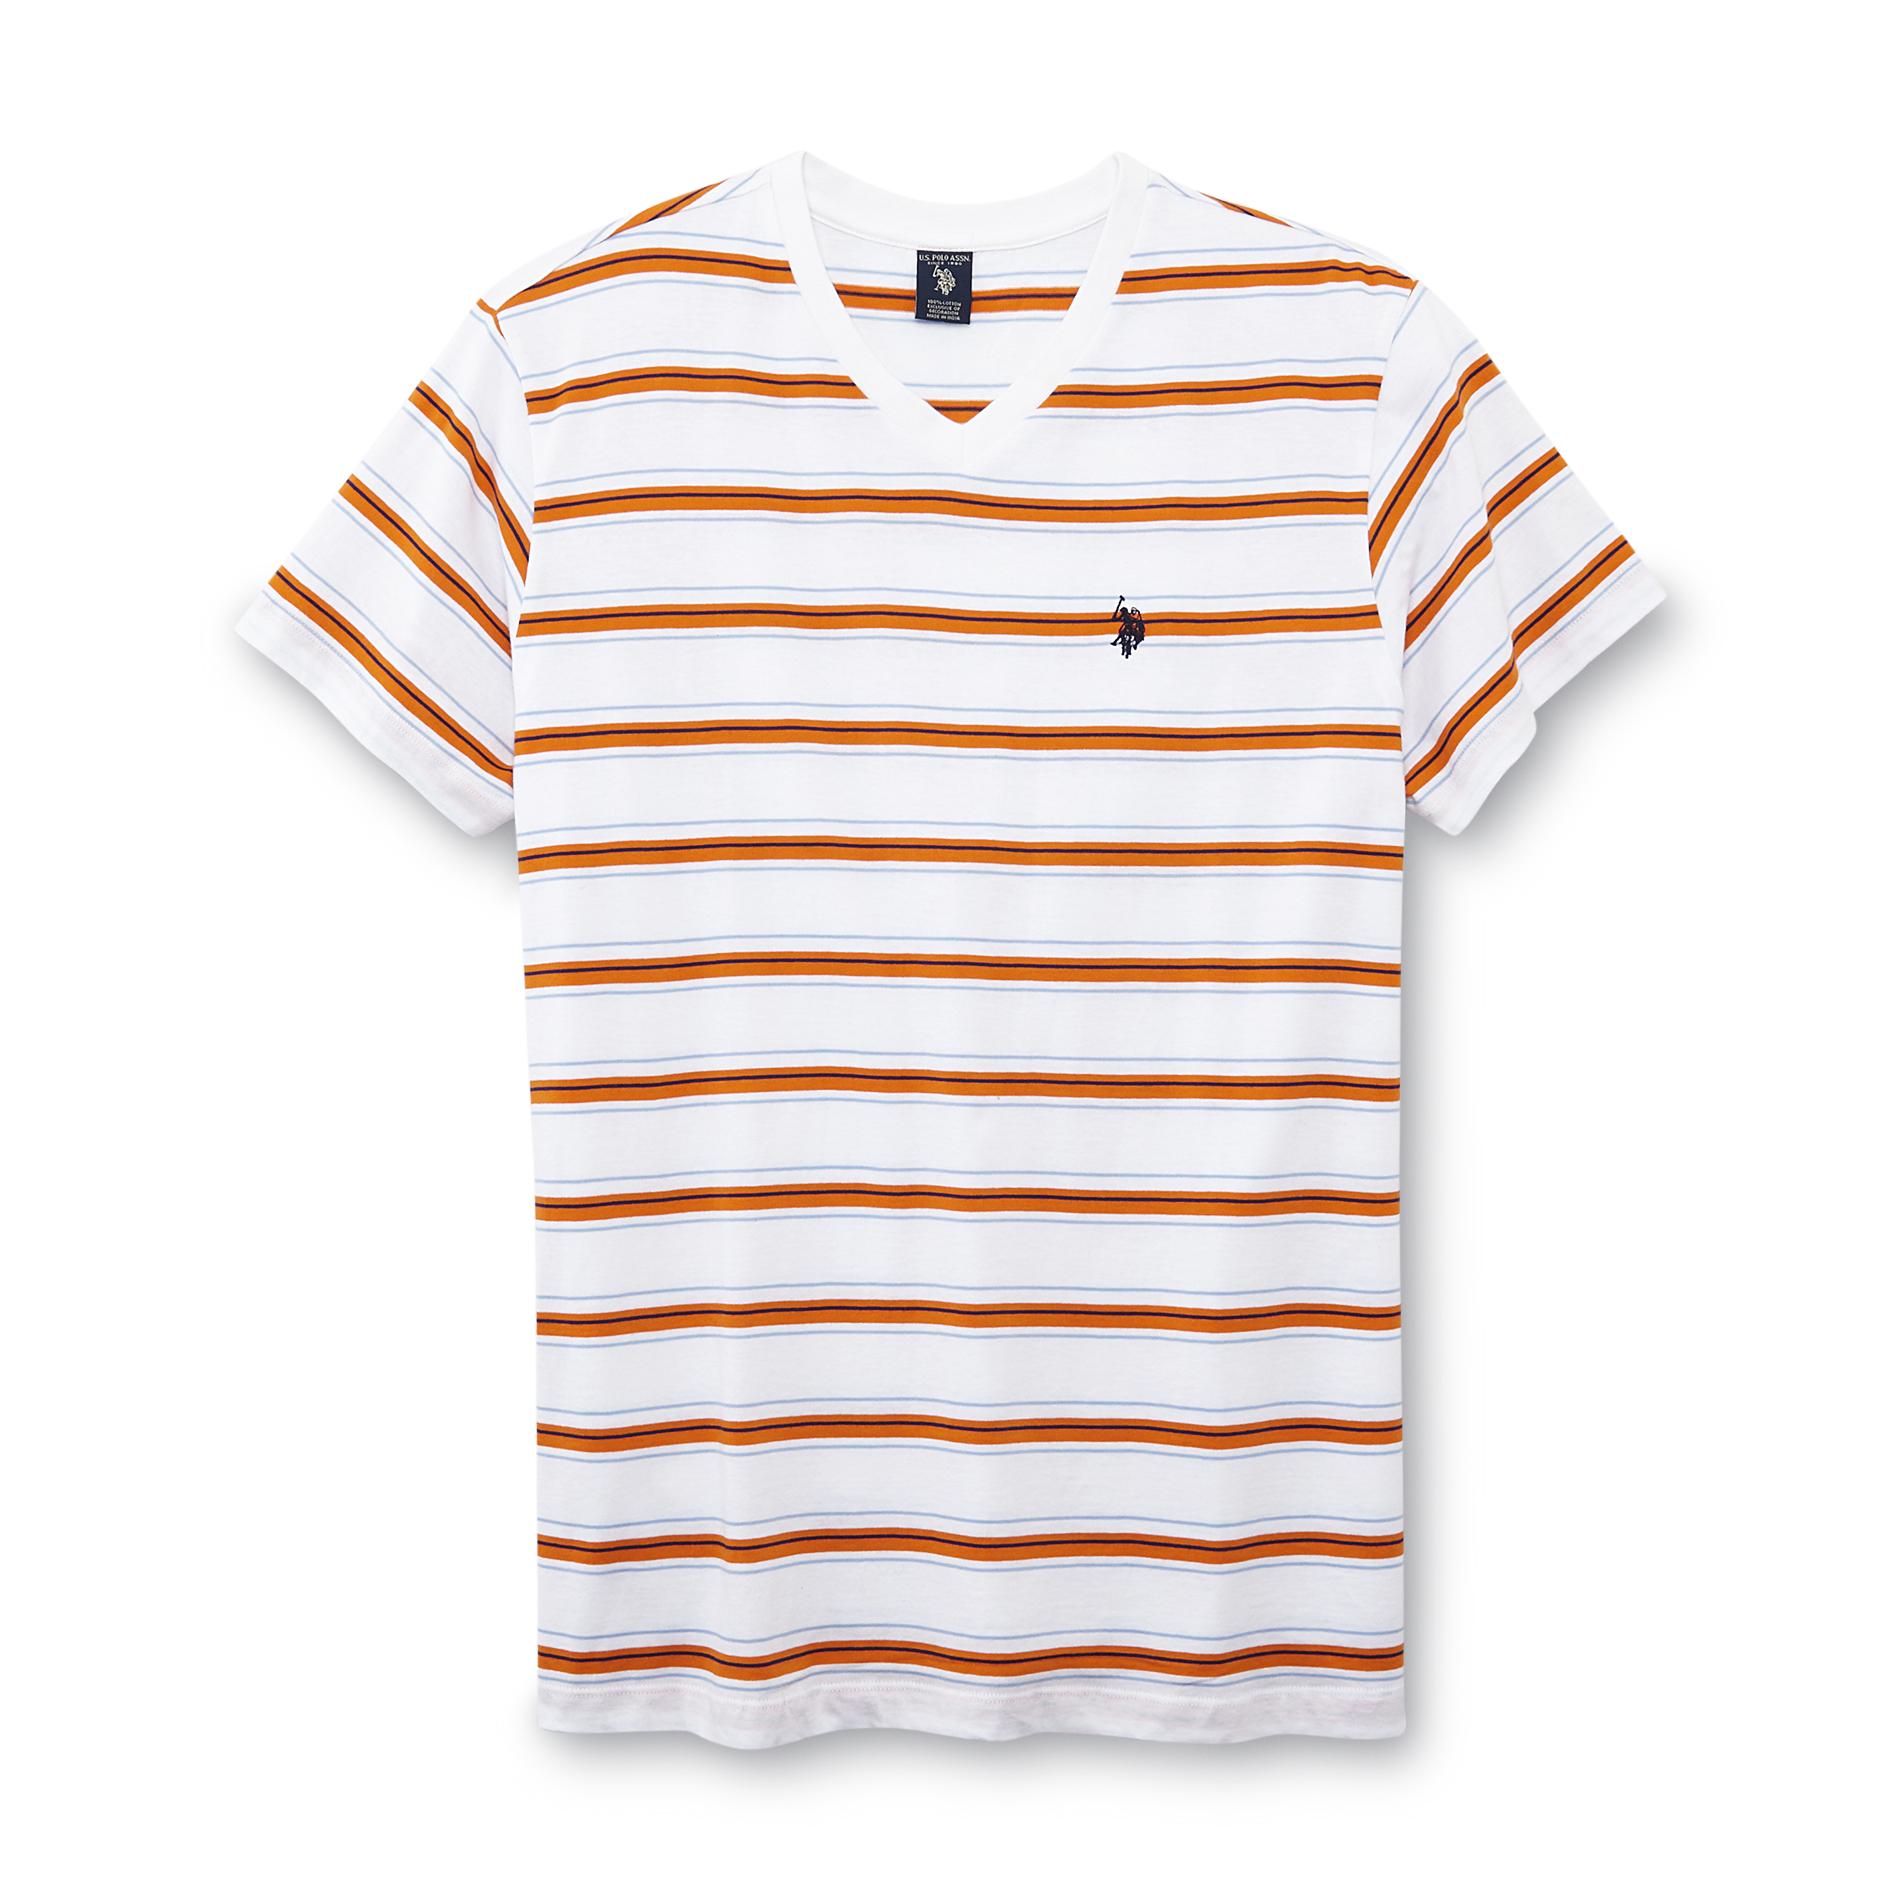 U.S. Polo Assn. Men's Jersey Knit T-Shirt - Striped